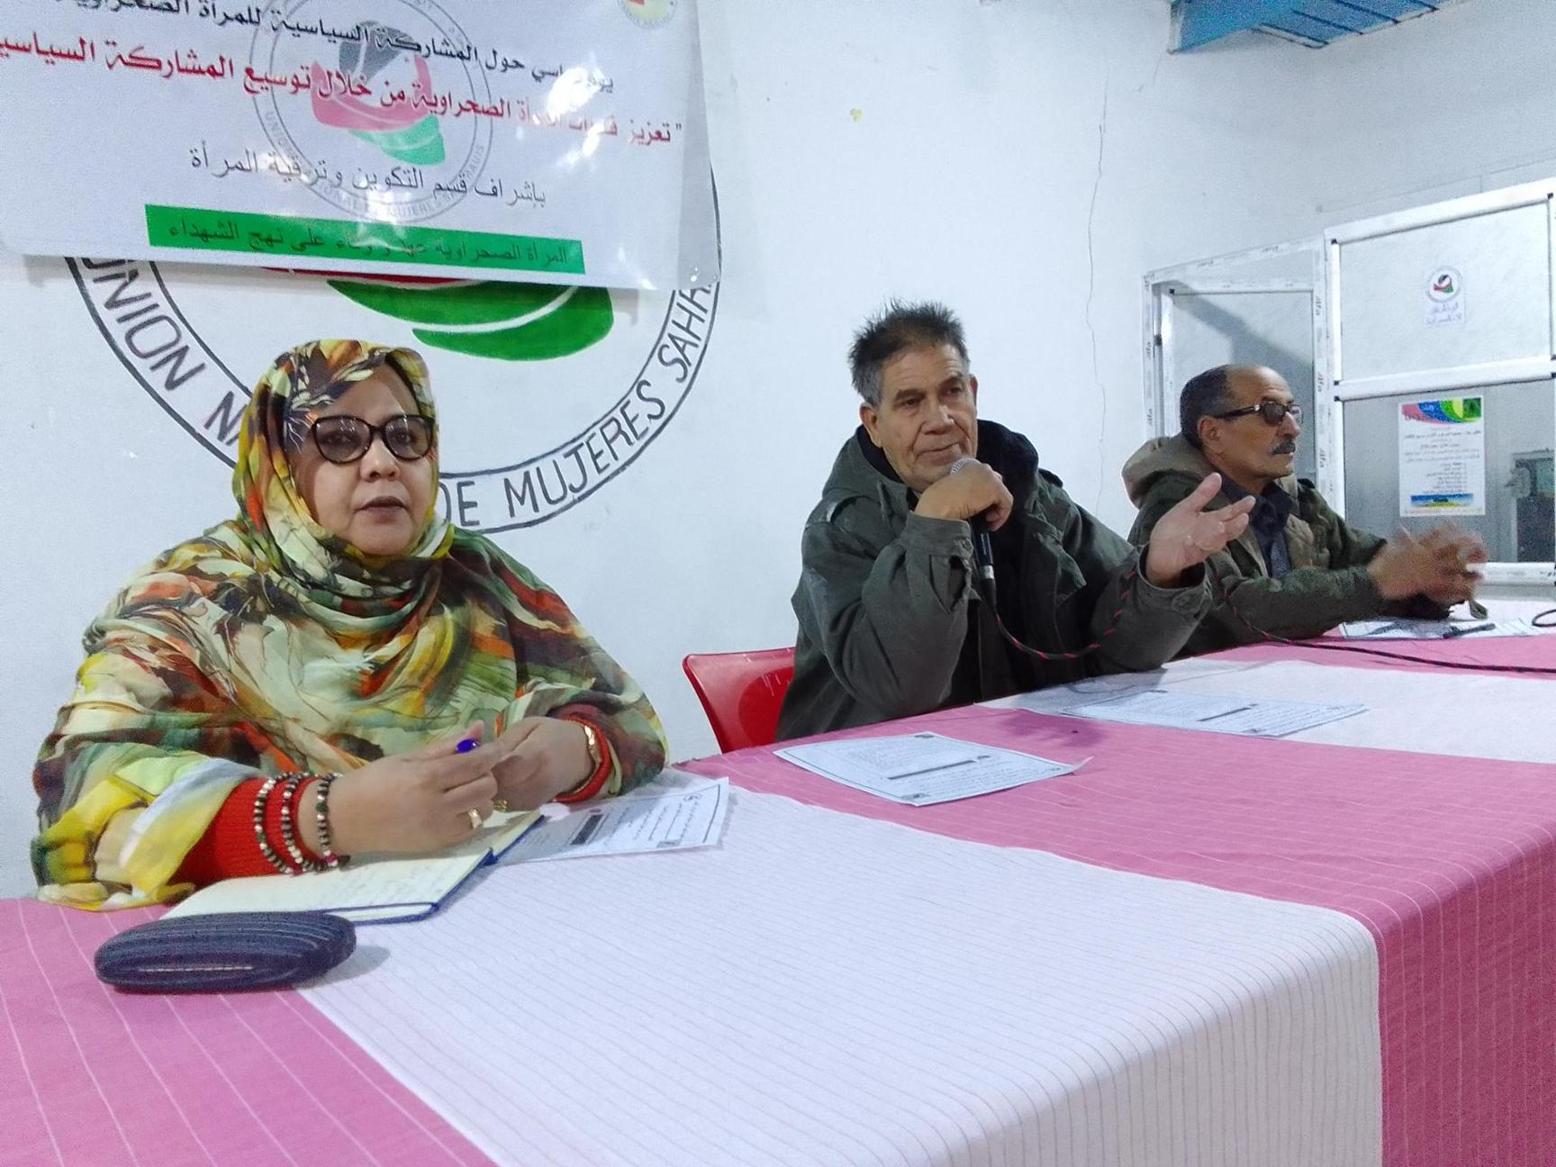 الإتحاد الوطني للمرأة الصحراوية ينظم يوما دراسيا حول المشاركة السياسية للمرأة